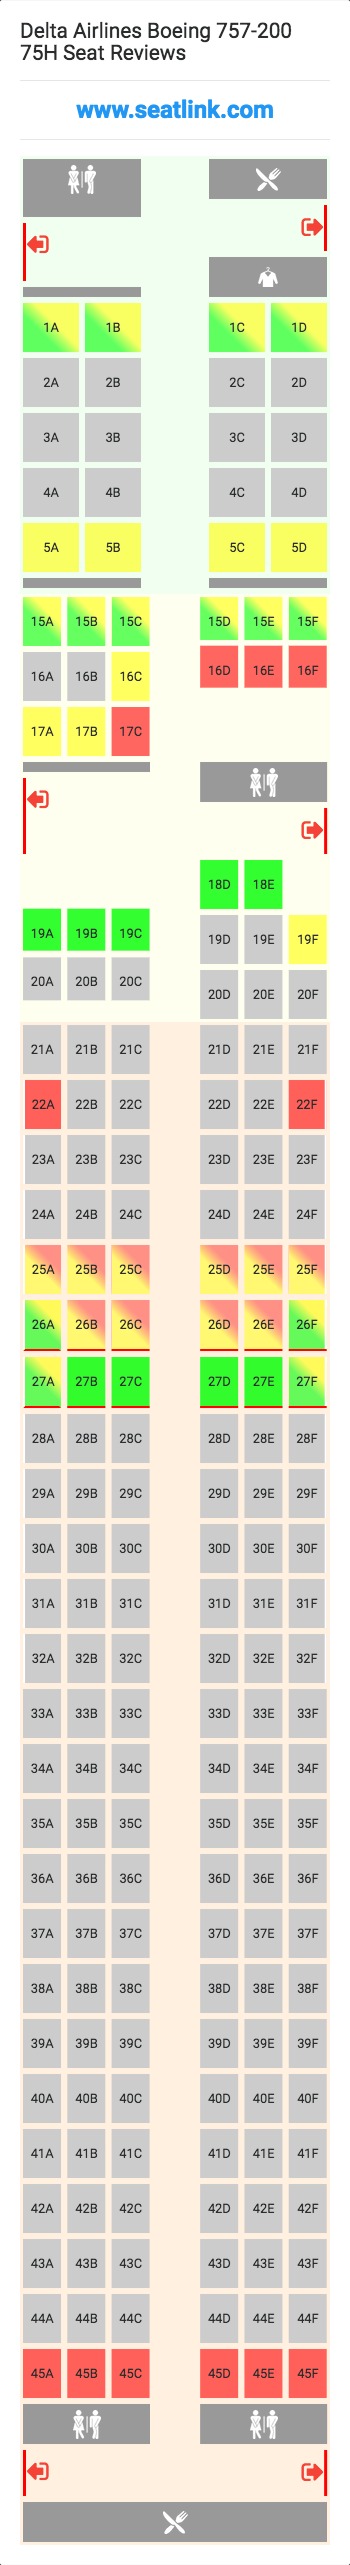 Delta Flight 140 Seating Chart